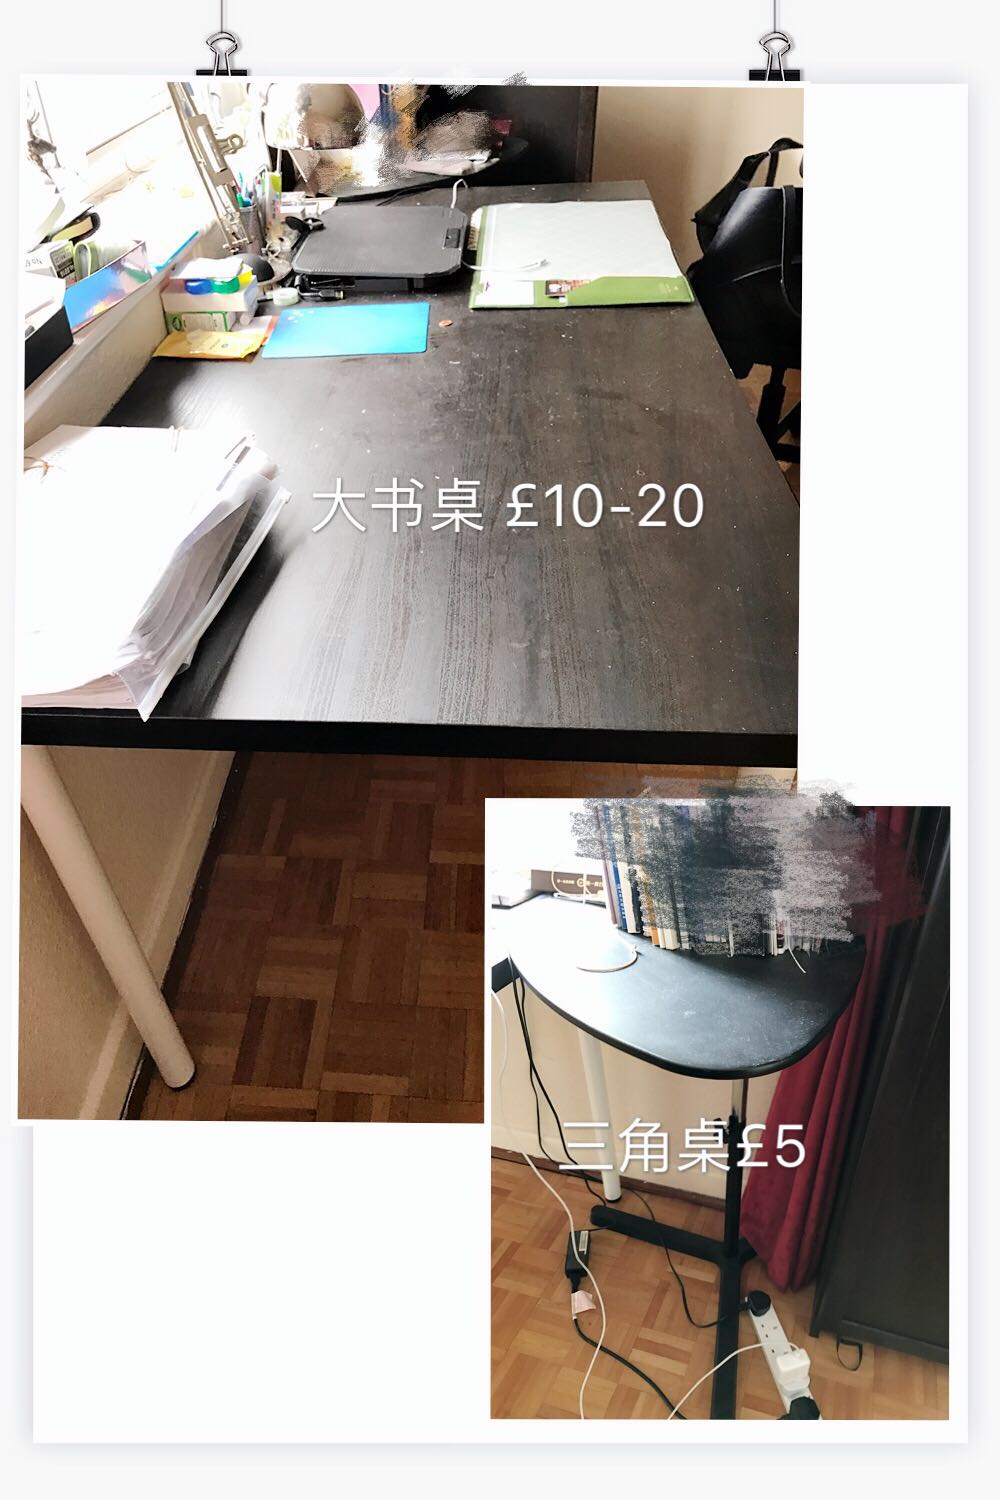 WeChat Image_20180802121527.jpg